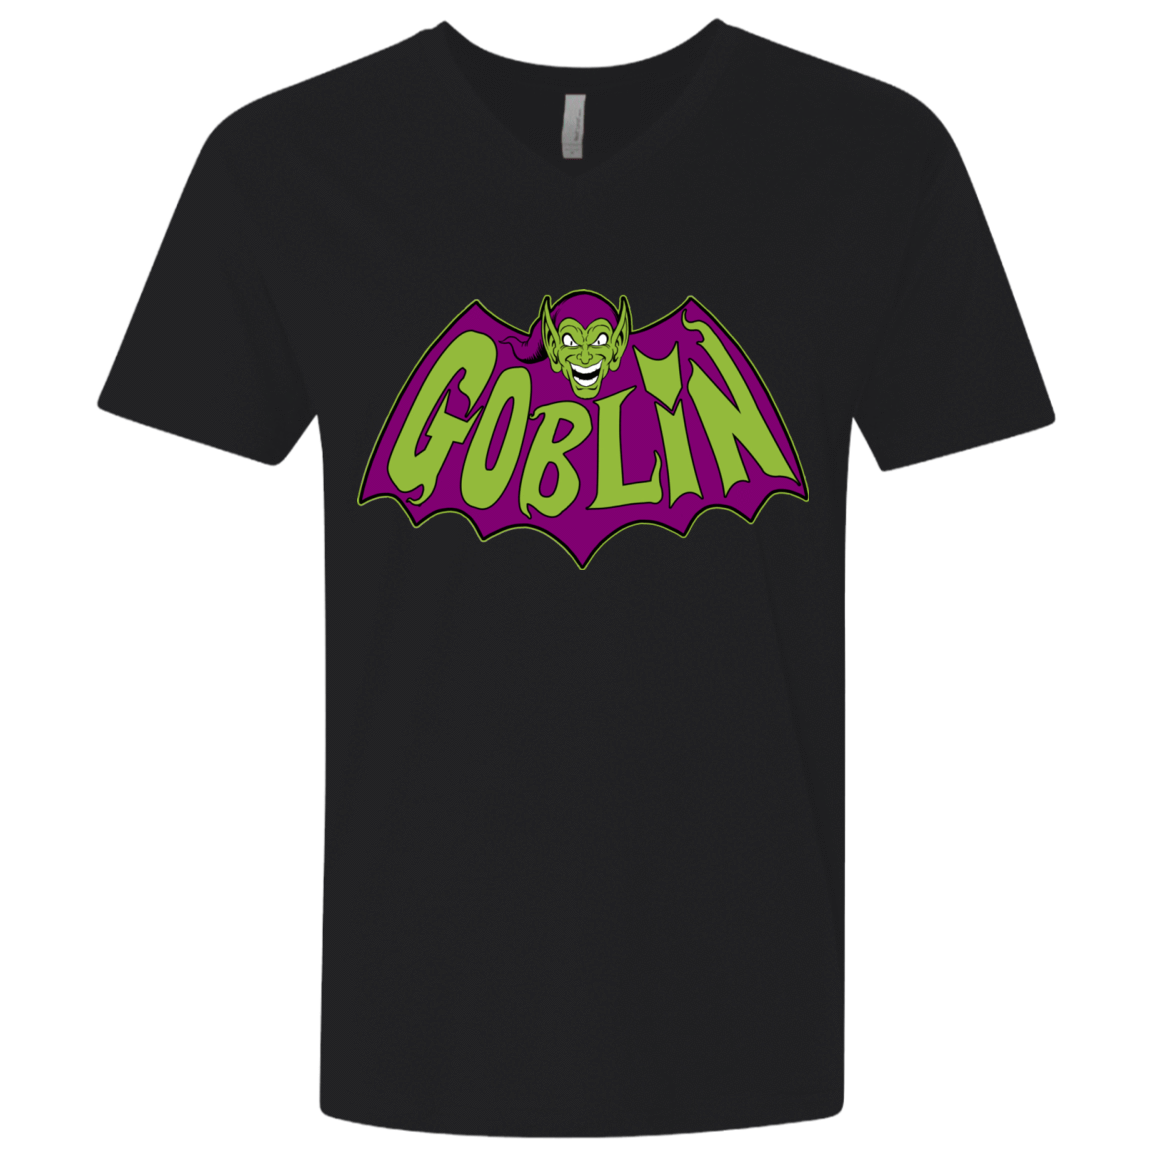 T-Shirts Black / X-Small Goblin Men's Premium V-Neck